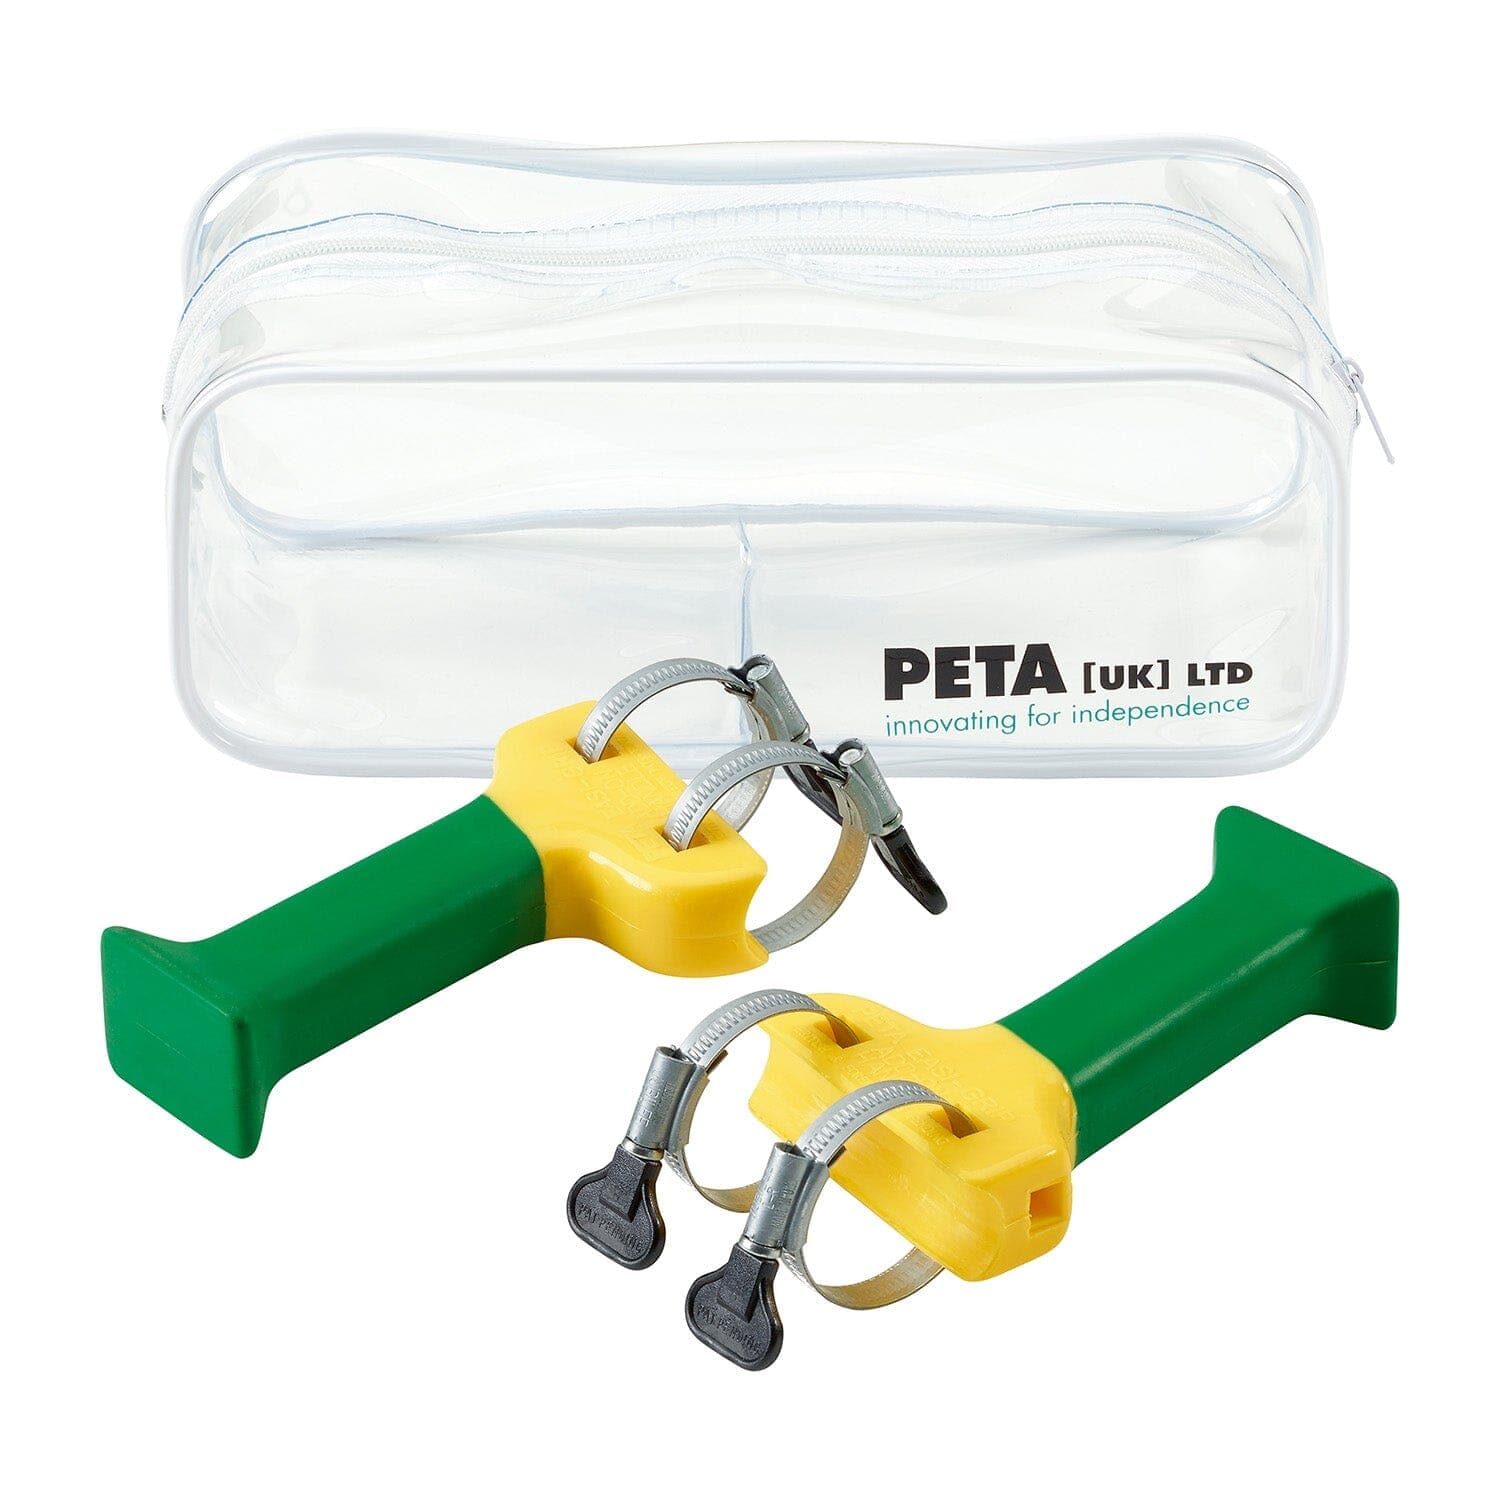 PETA (UK) Ltd Easi-Grip Add-On Handles (pack of 2)